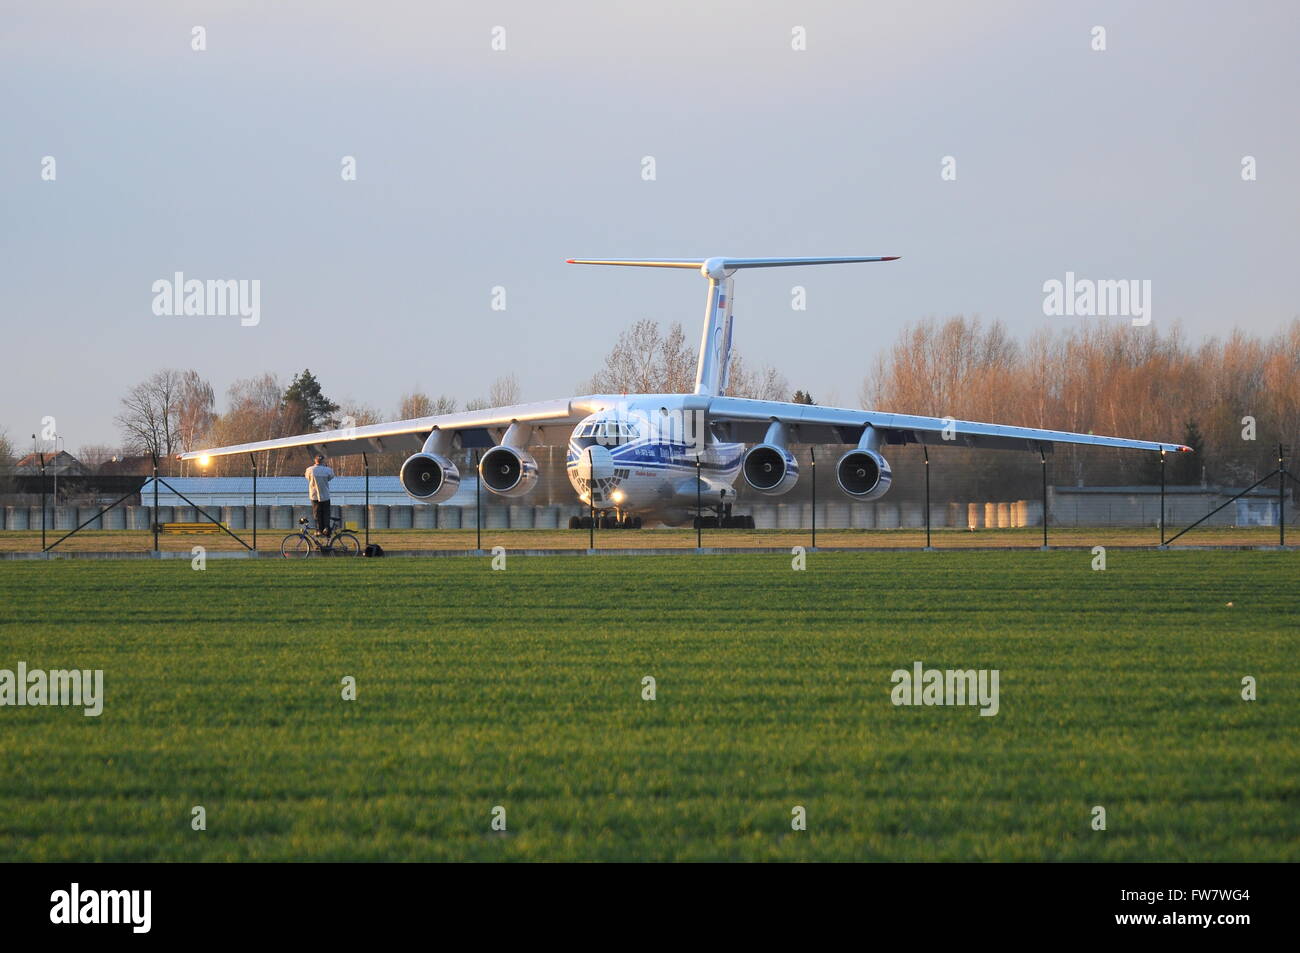 Avions de transport IL-76 russe, le transport de fret, transport, avion, aviation, la Russie, l'Iliouchine, observateur Banque D'Images